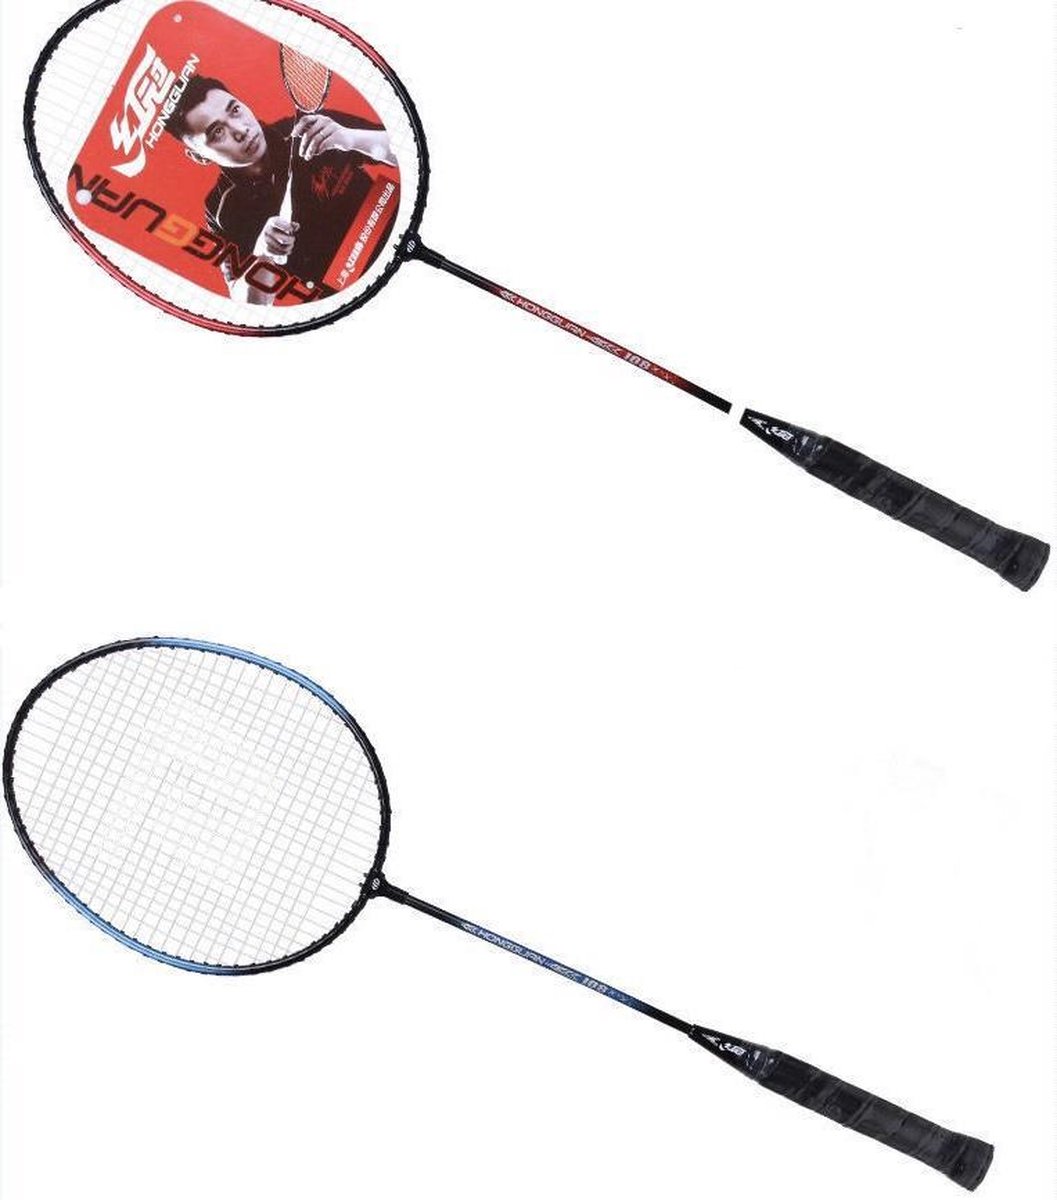 HONGGUAN Badmintonset - Badmintonset - Badminton - 2 rackets - Shuttles - Veren shuttles - Rood/Zwart en Blauw/Zwart